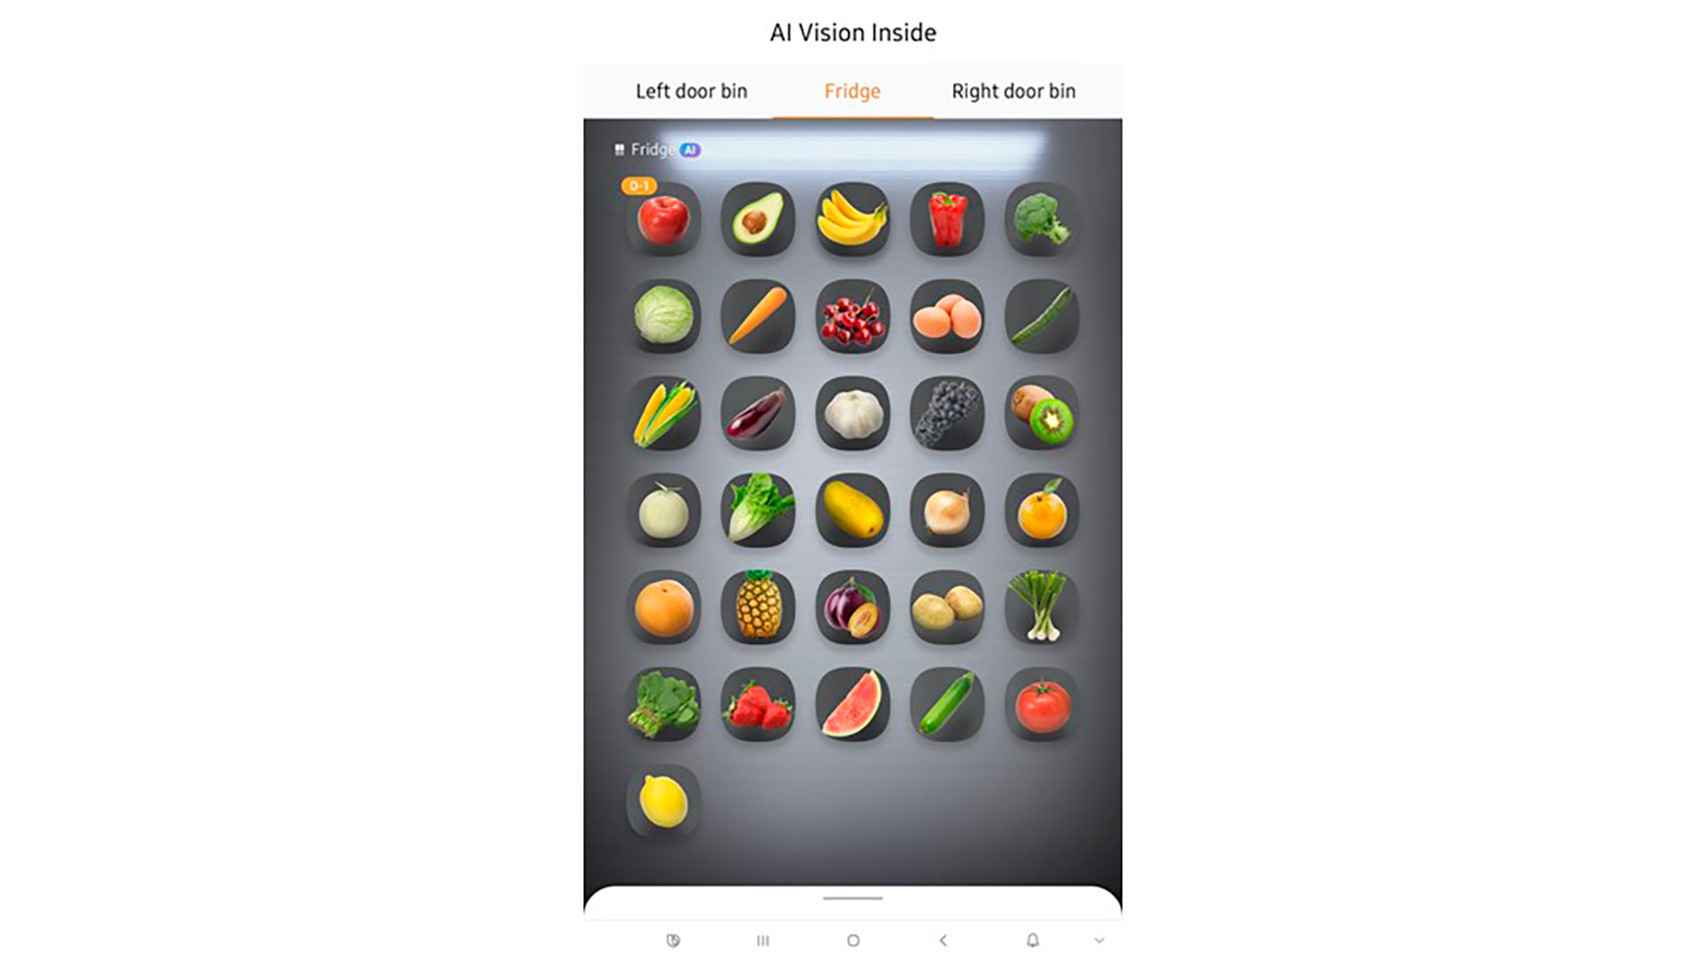 El AI Family Hub usa AI Vision para el reconocimiento de los alimentos en el frigorífico